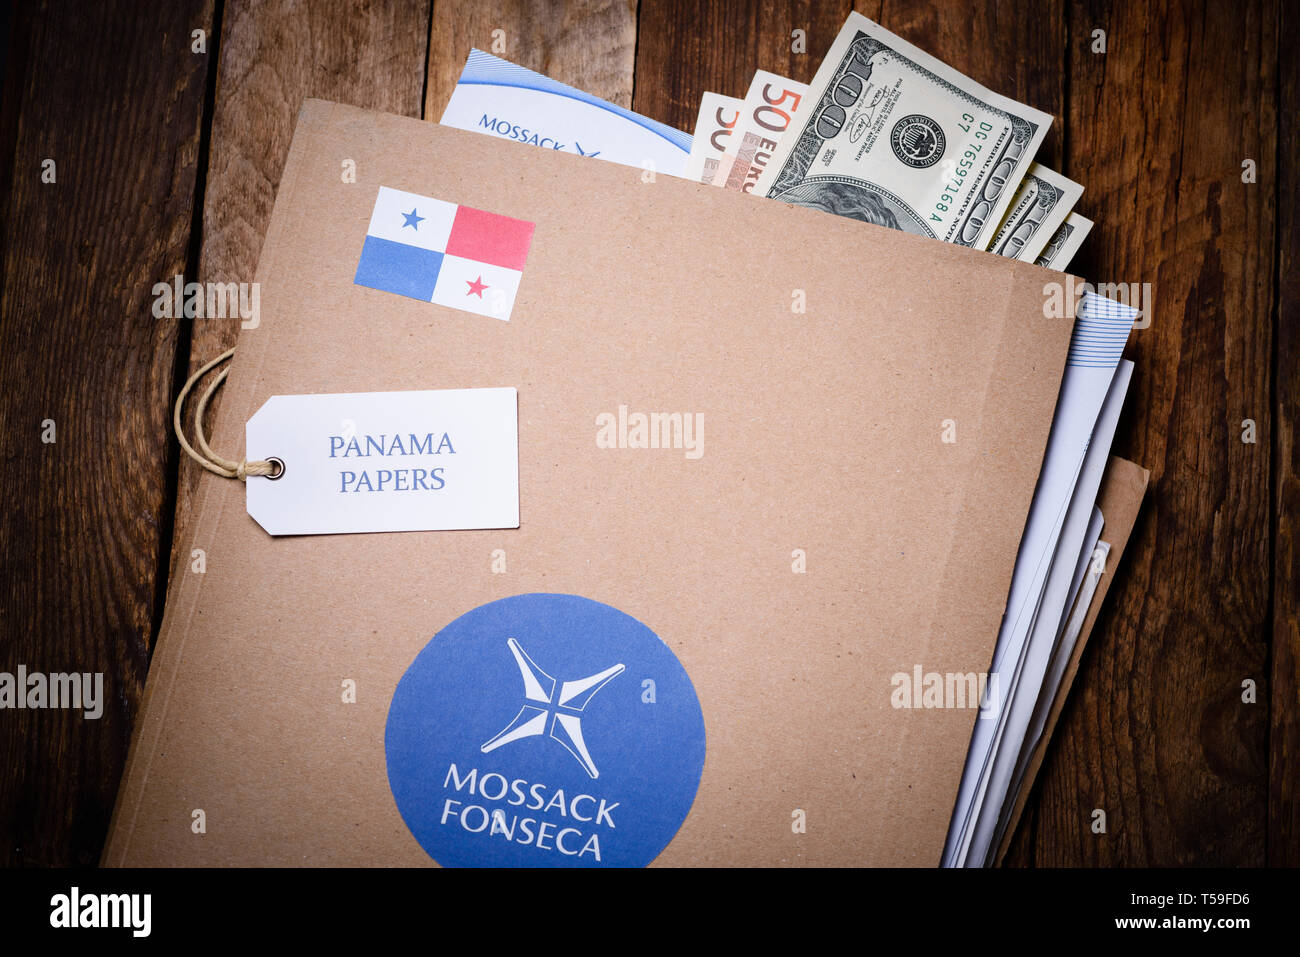 Krakau, Polen - 5 April, 2016: Ordner mit mossack Fonseca logo mit US- und EU-Währung. Panama Papiere sind Millionen durchgesickerten Dokumente mit Informatio Stockfoto